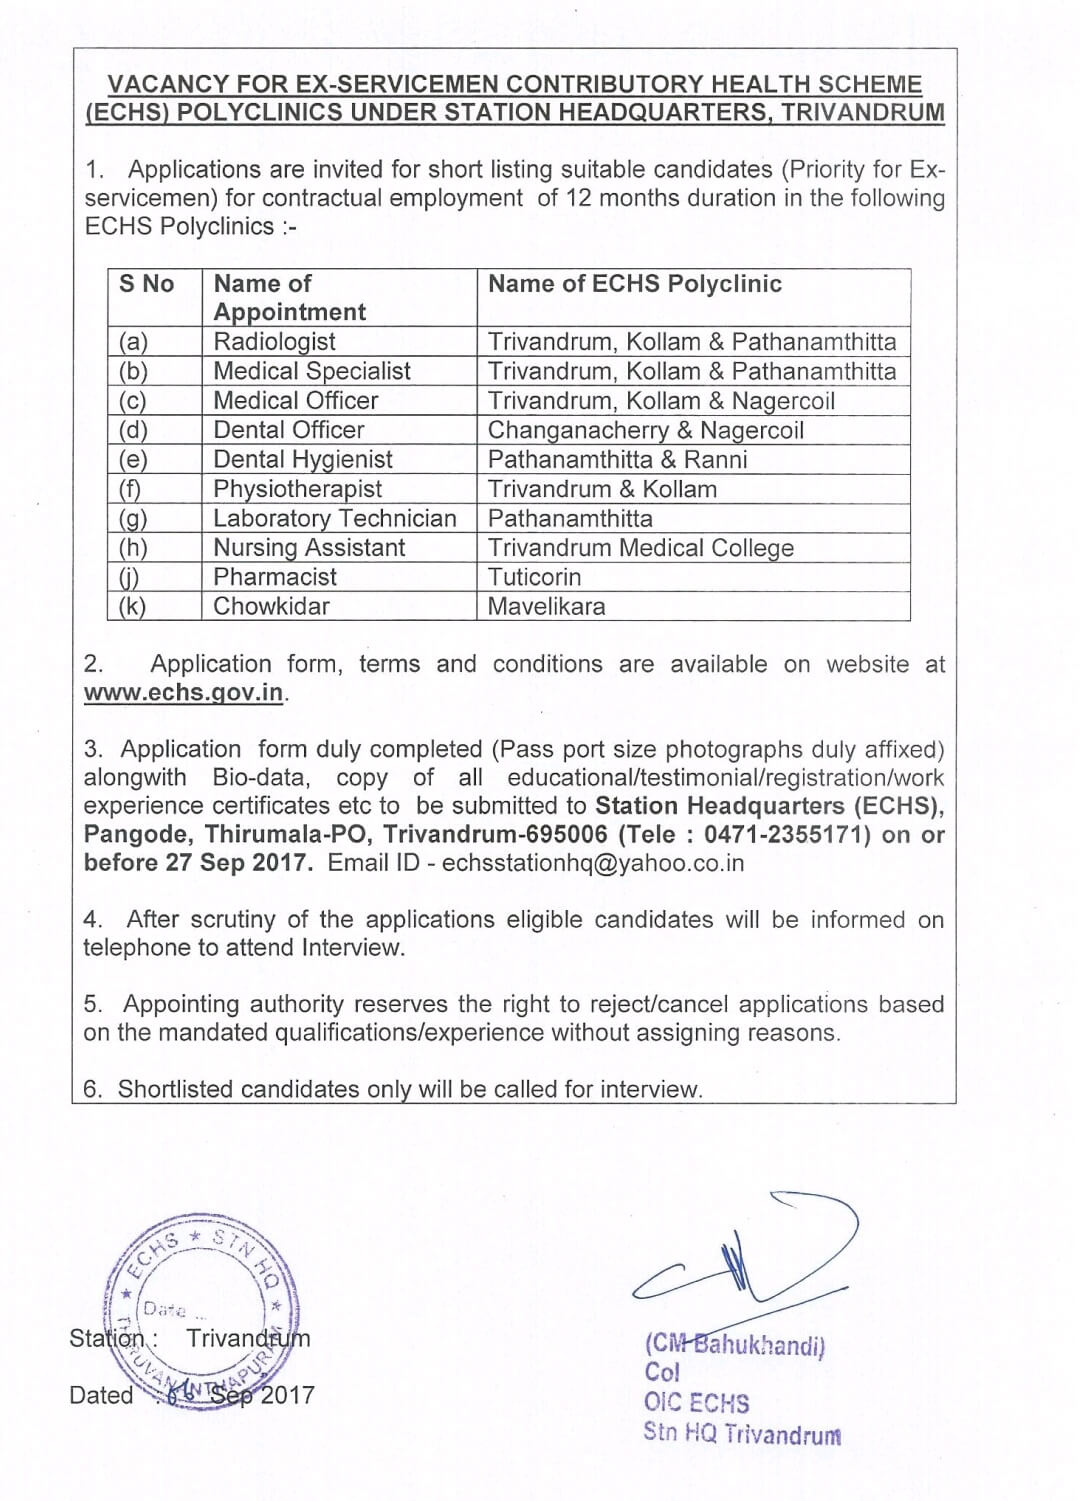 Vacancy For Doctors of Multiple Specialties in ECHS Polyclinics in Trivandrum